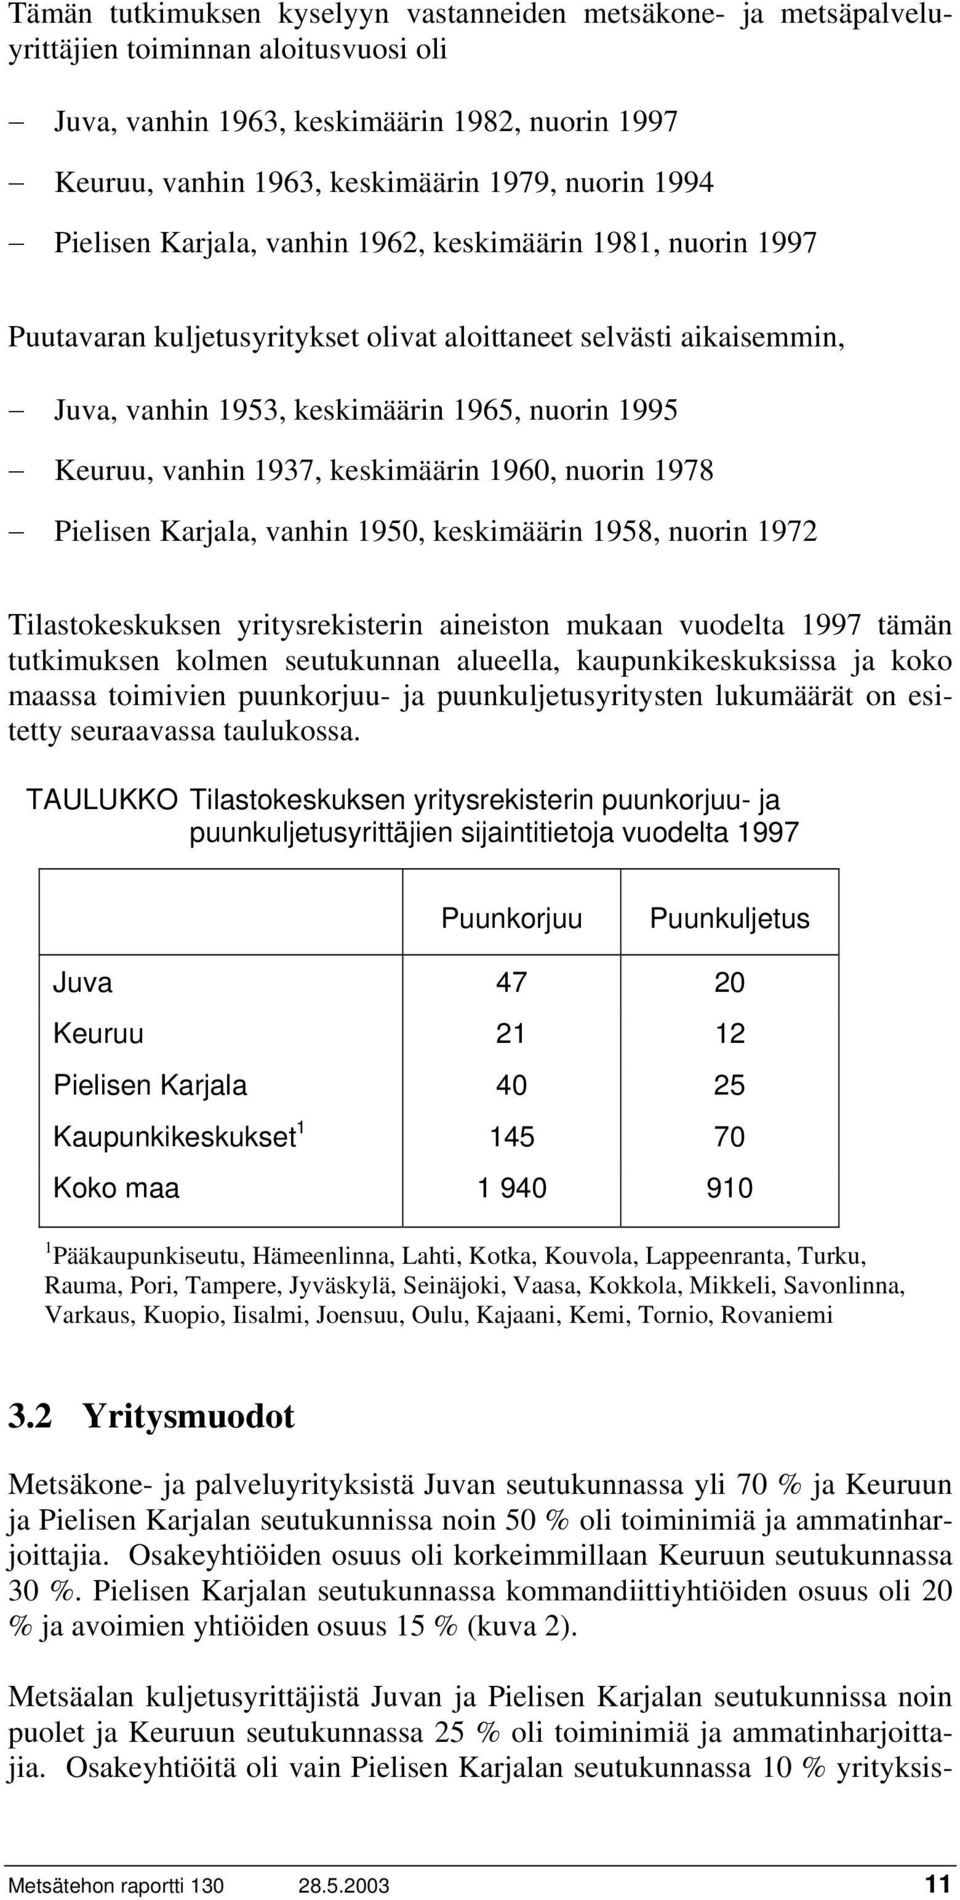 1937, keskimäärin 1960, nuorin 1978 Pielisen Karjala, vanhin 1950, keskimäärin 1958, nuorin 1972 Tilastokeskuksen yritysrekisterin aineiston mukaan vuodelta 1997 tämän tutkimuksen kolmen seutukunnan